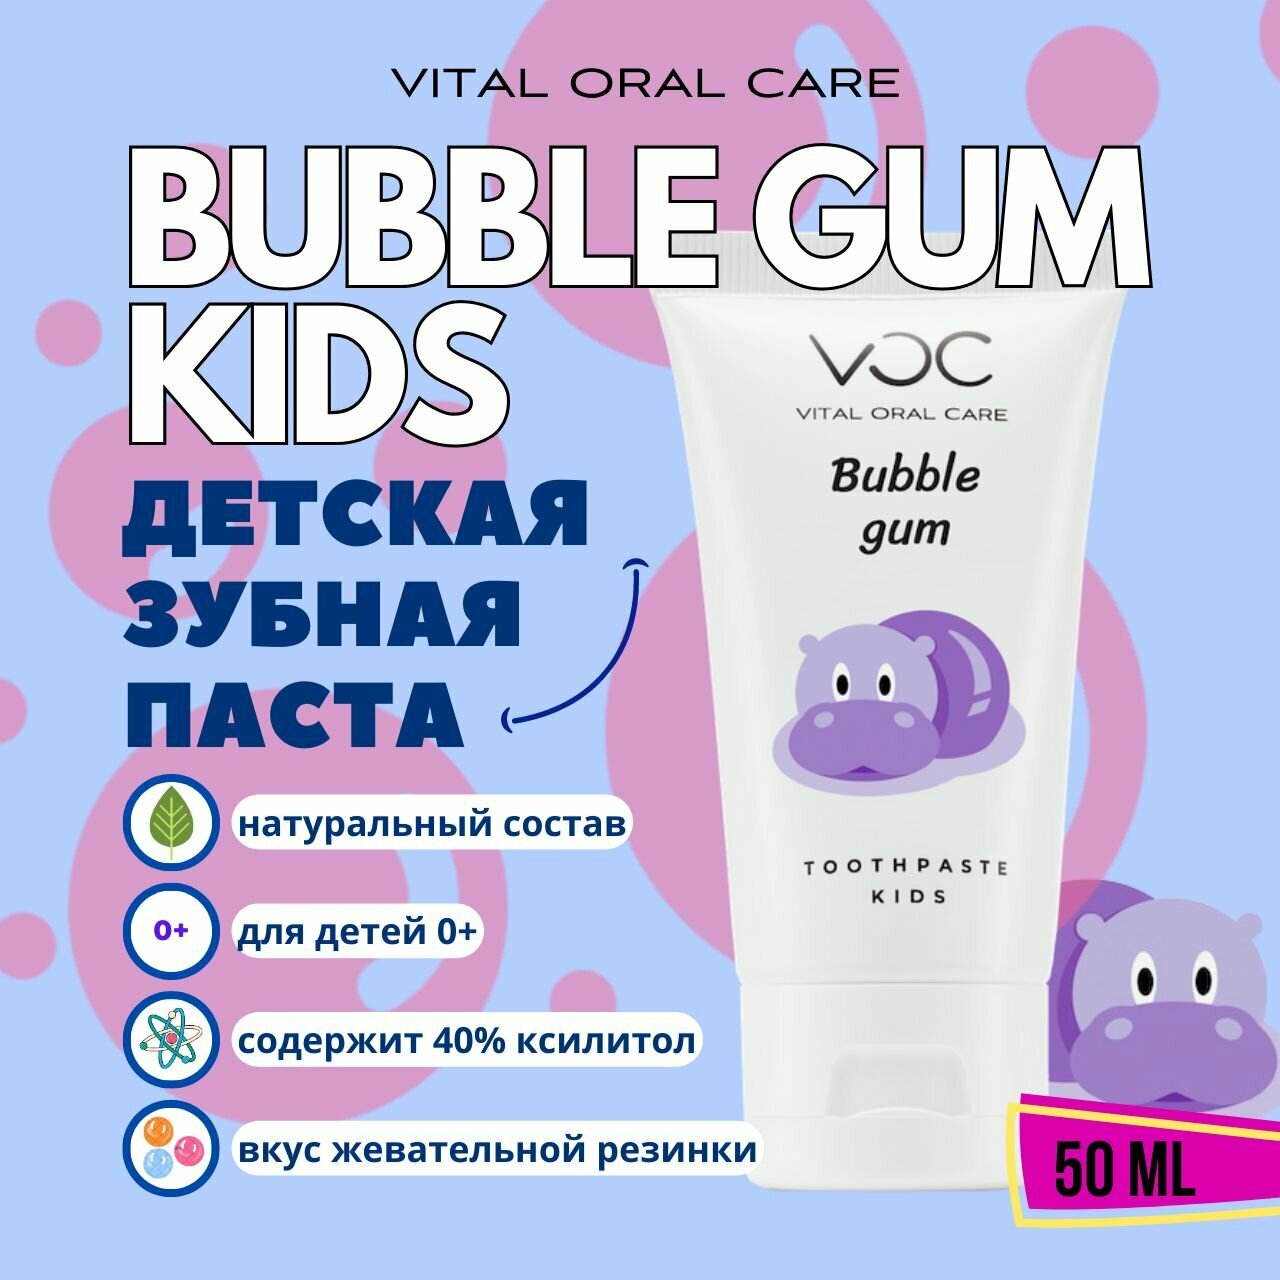 Детская зубная паста VOC kids Bubble Gum - со вкусом жвачки зубной гель для укрепления зубов 50 мл